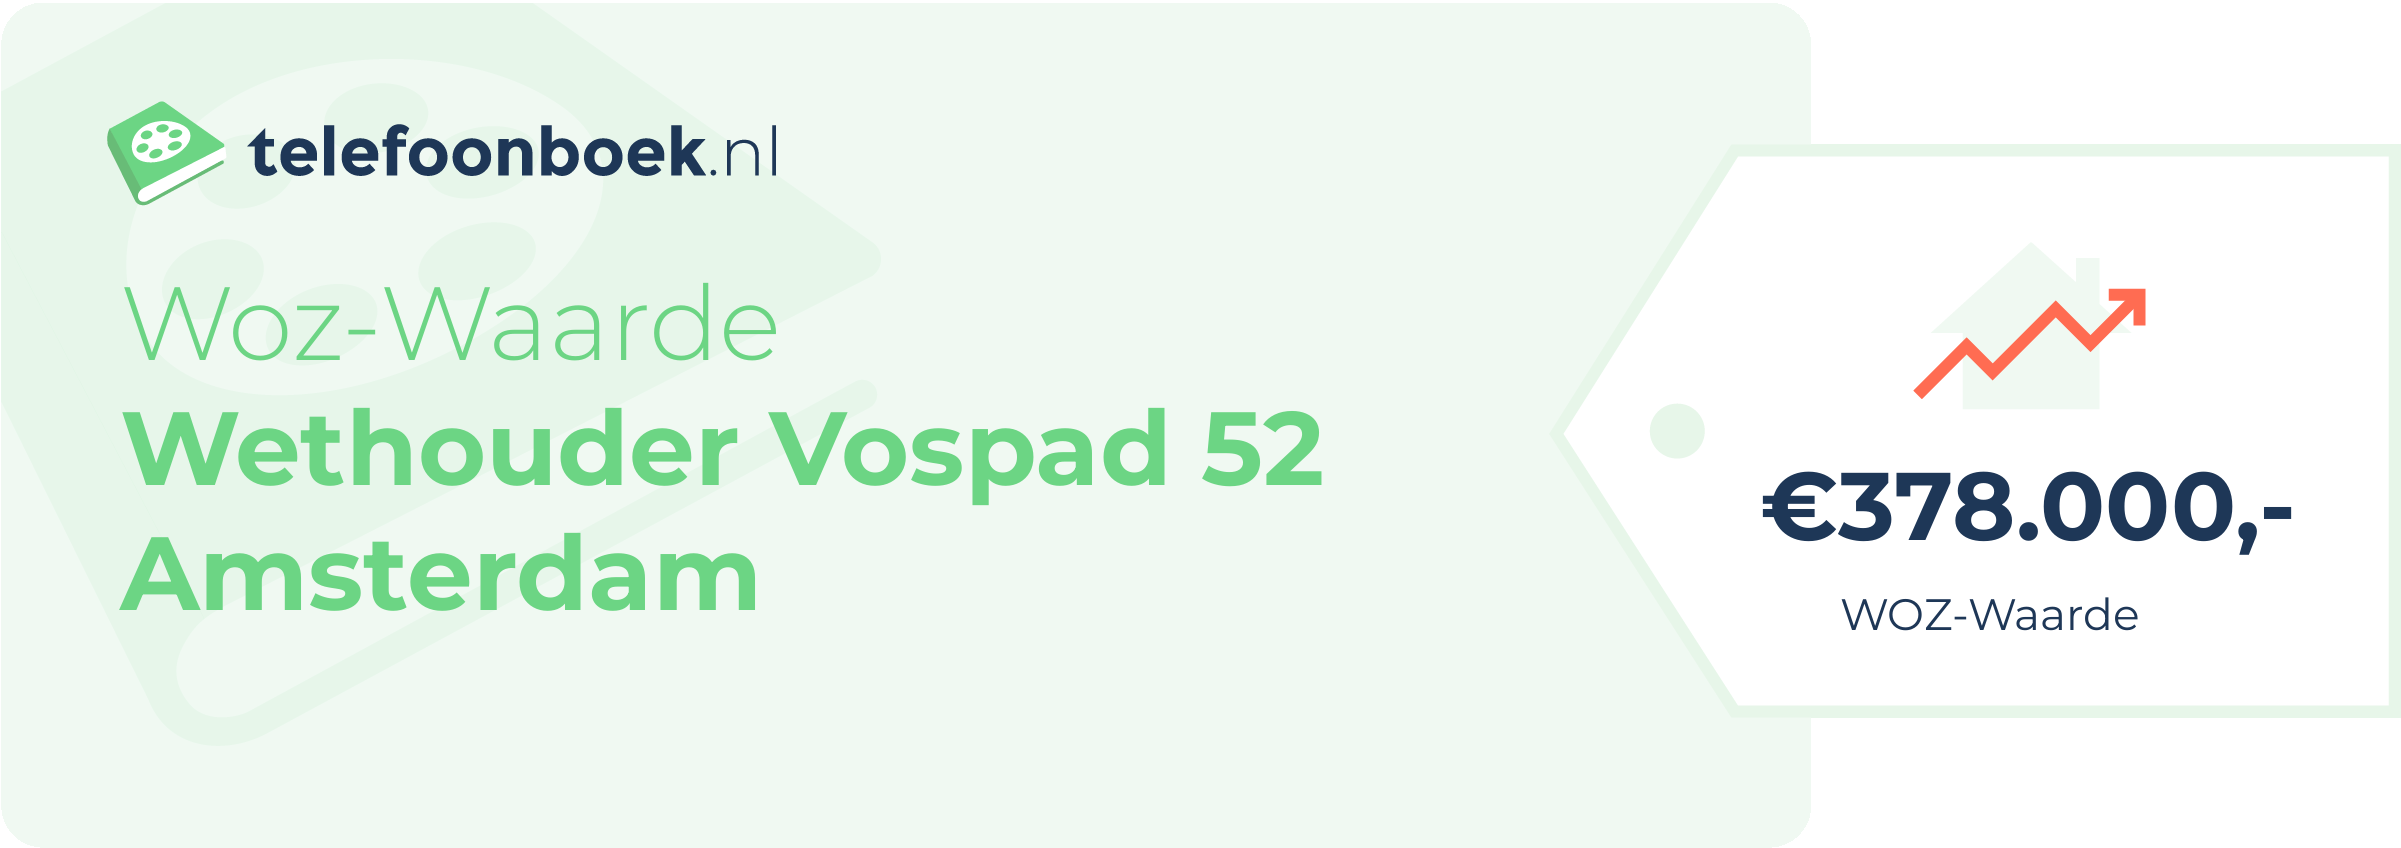 WOZ-waarde Wethouder Vospad 52 Amsterdam